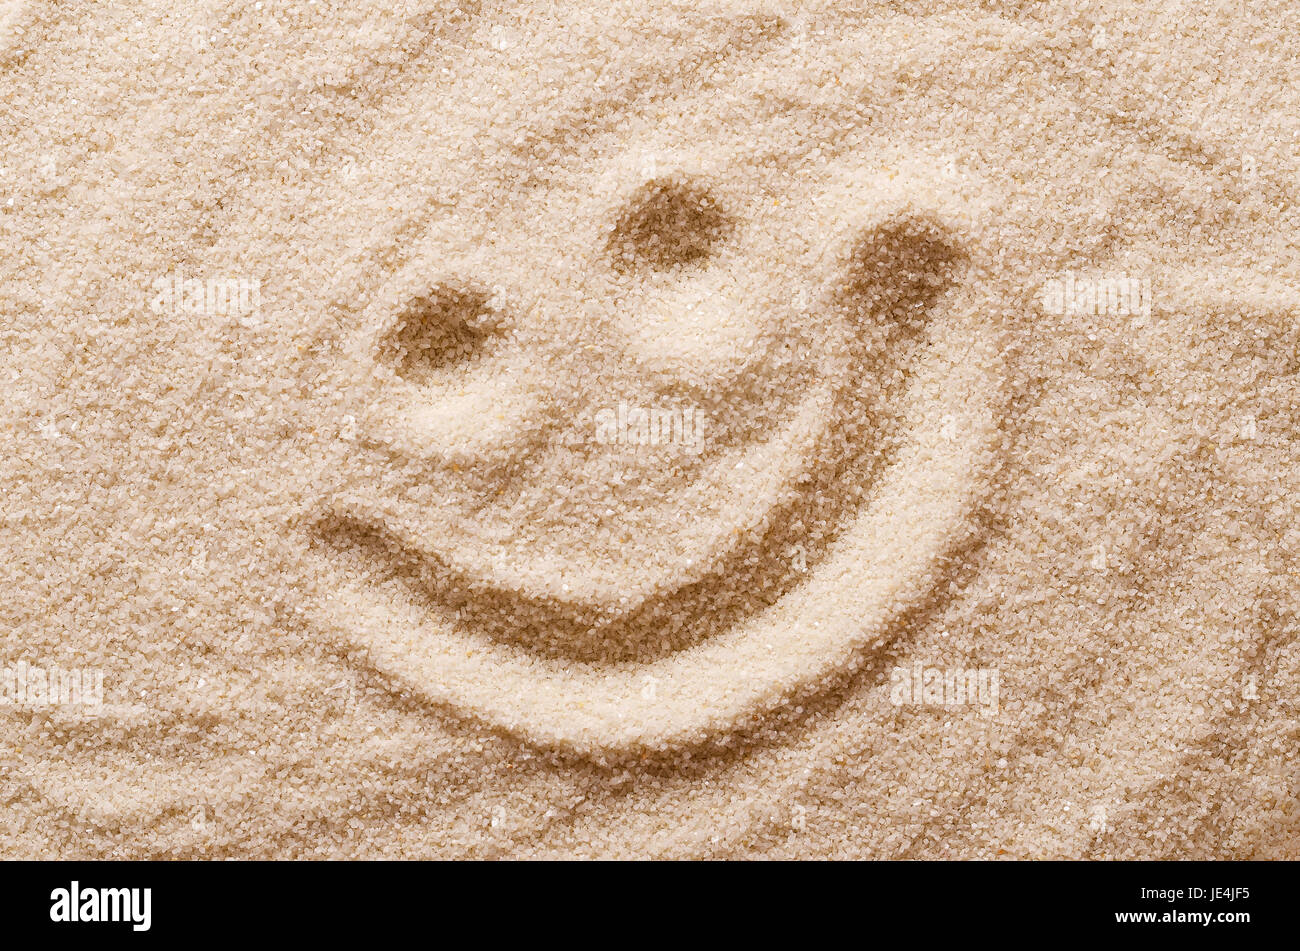 Happy lächelndes Gesicht im Sand. Augen und Mund mit einem Finger in trockenen Trinkwasserbehältern Sand gezeichnet. Makrofoto Nahaufnahme von oben. Stockfoto